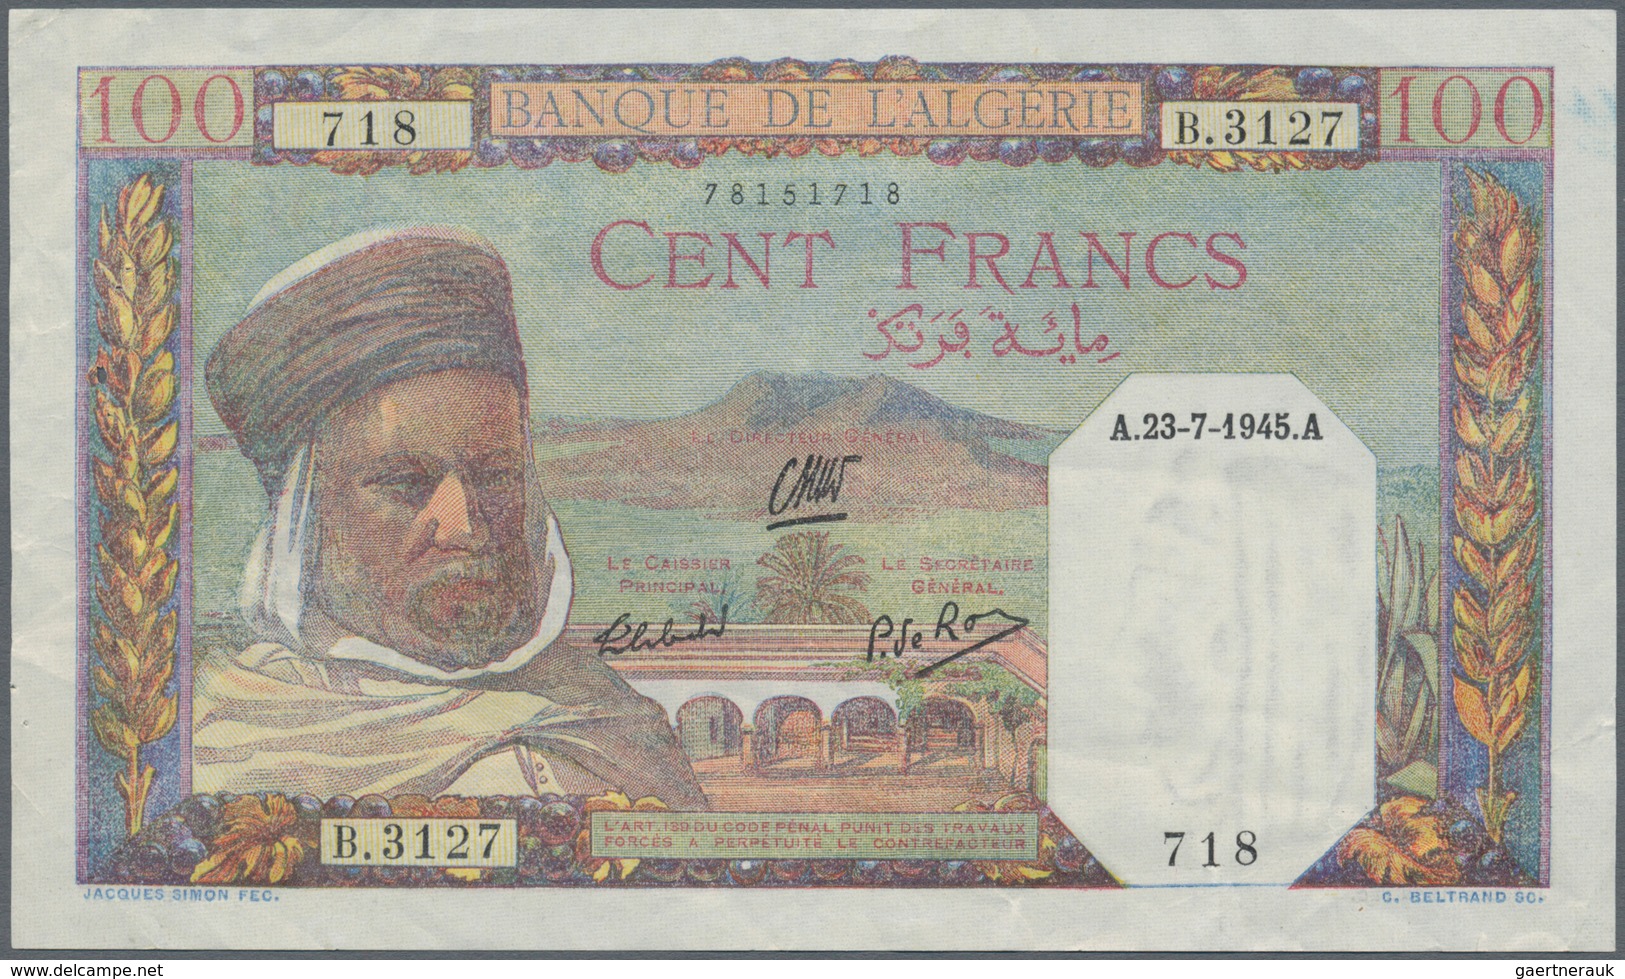 Algeria / Algerien: Set Of 3 Banknotes Containing 5 Francs 1916 P. 71b (VG), 100 Francs 1936 P. 81b - Argelia